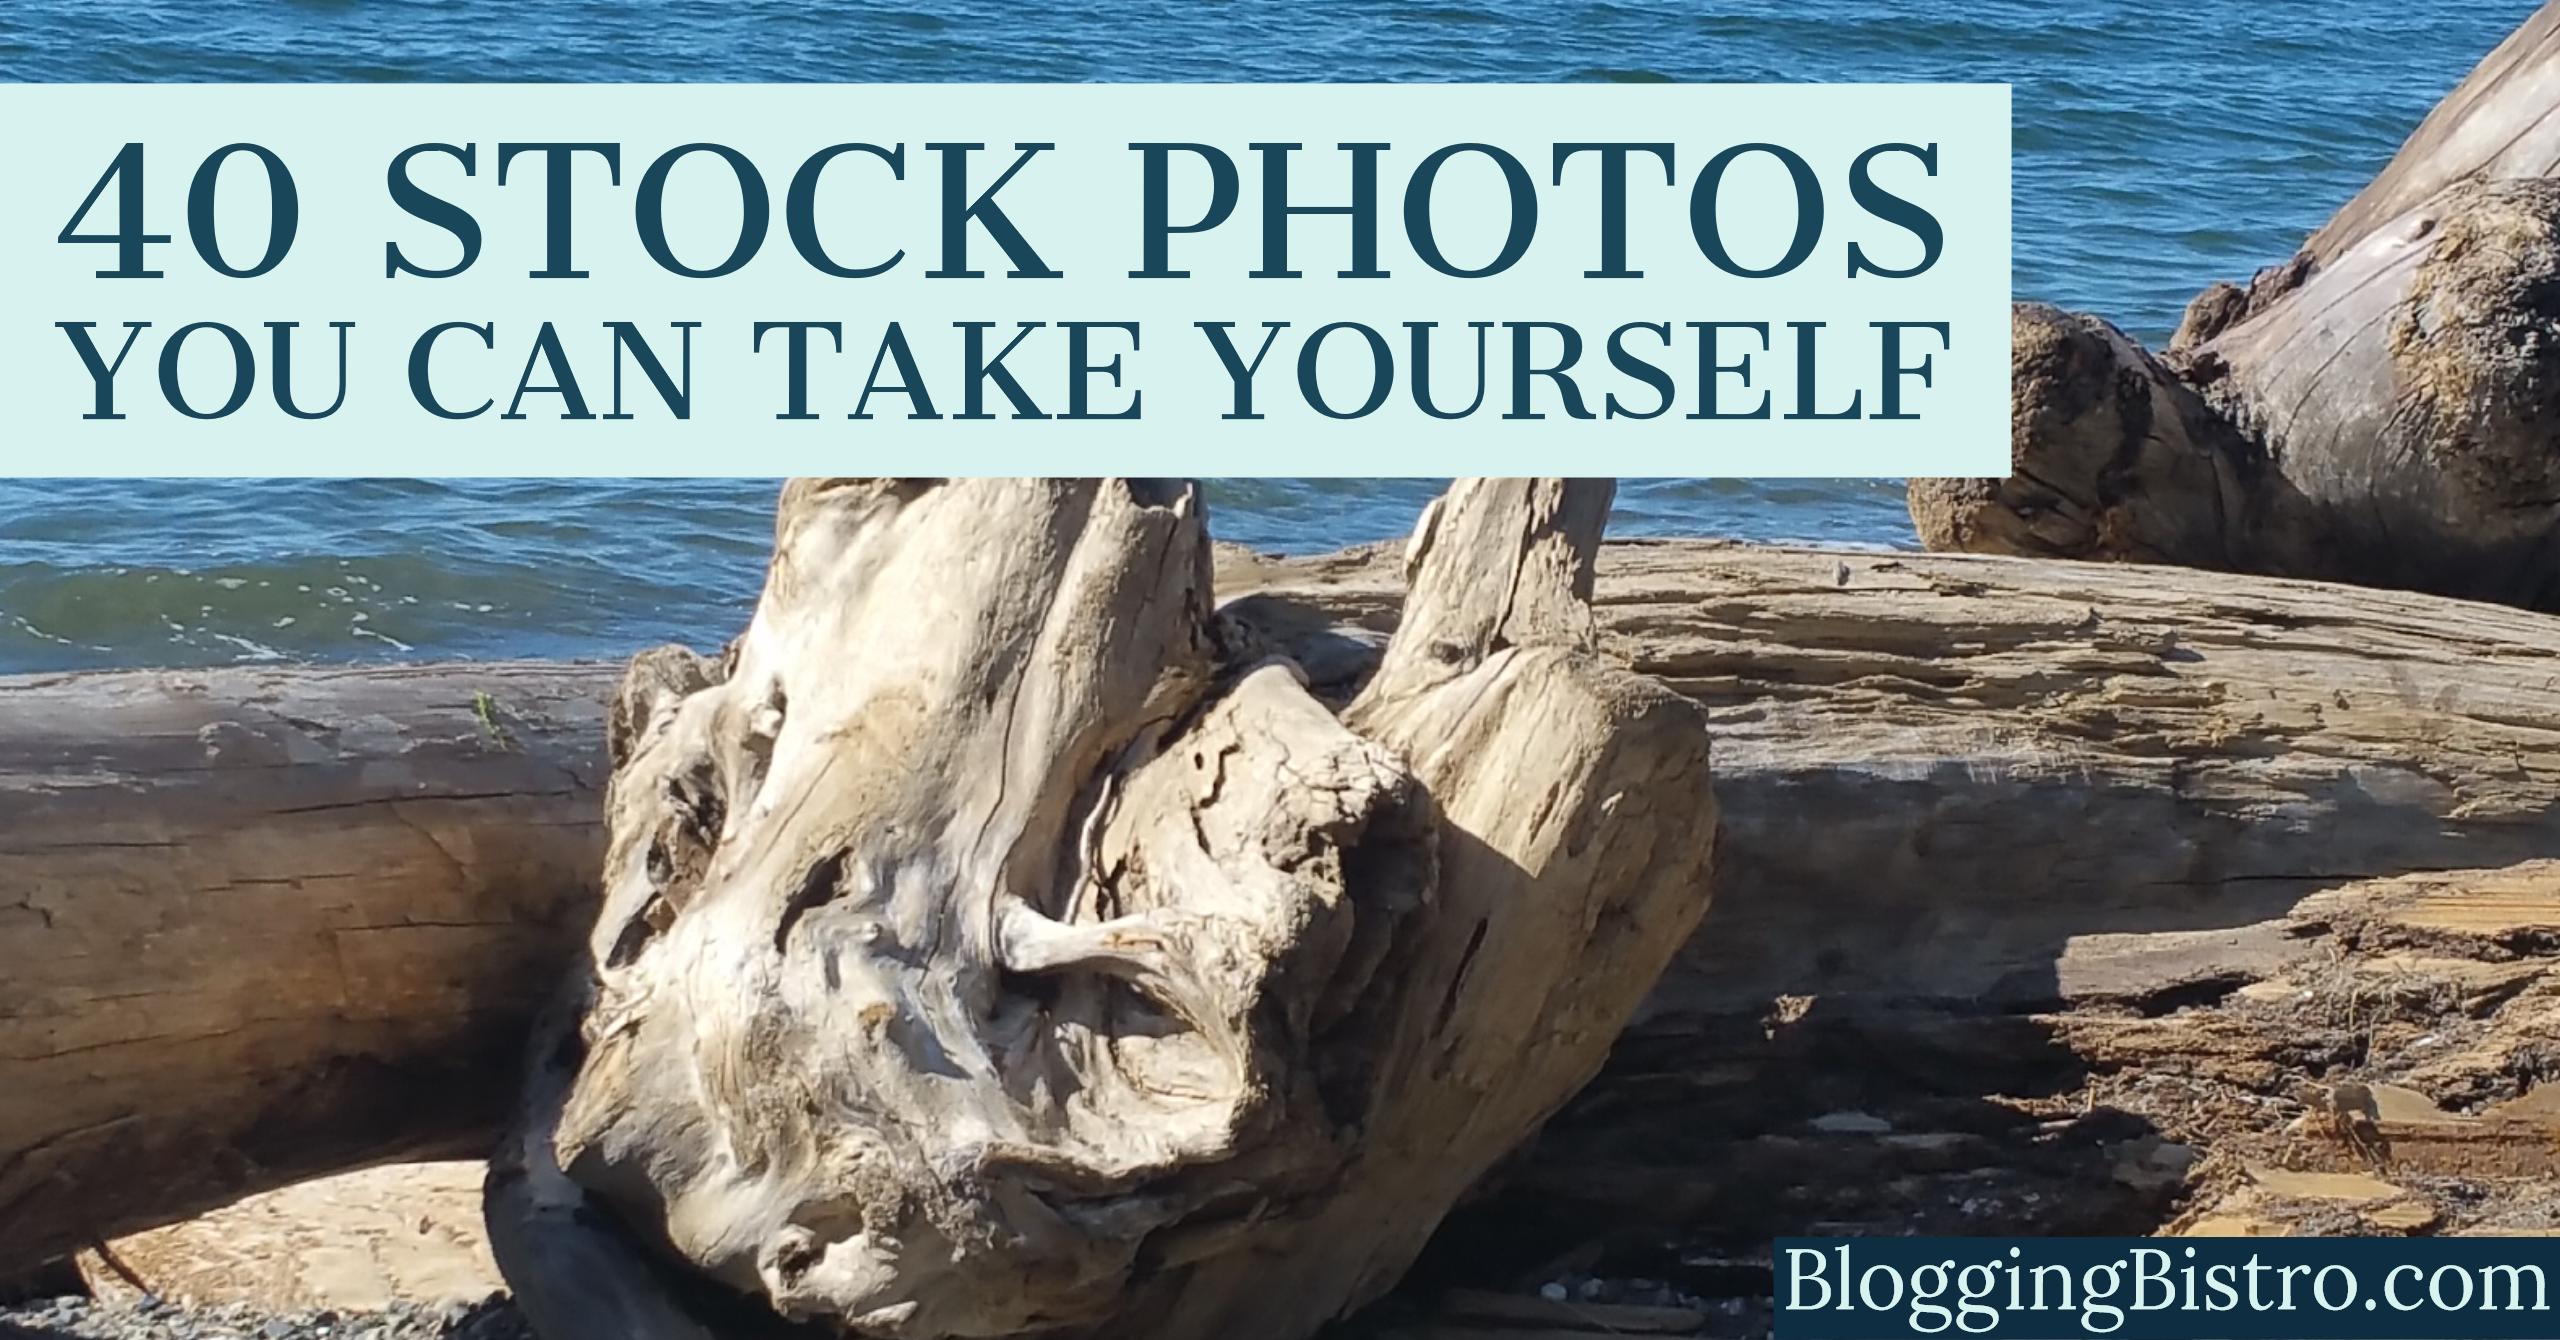 40 Stock photos you can take yourself | BloggingBistro.com